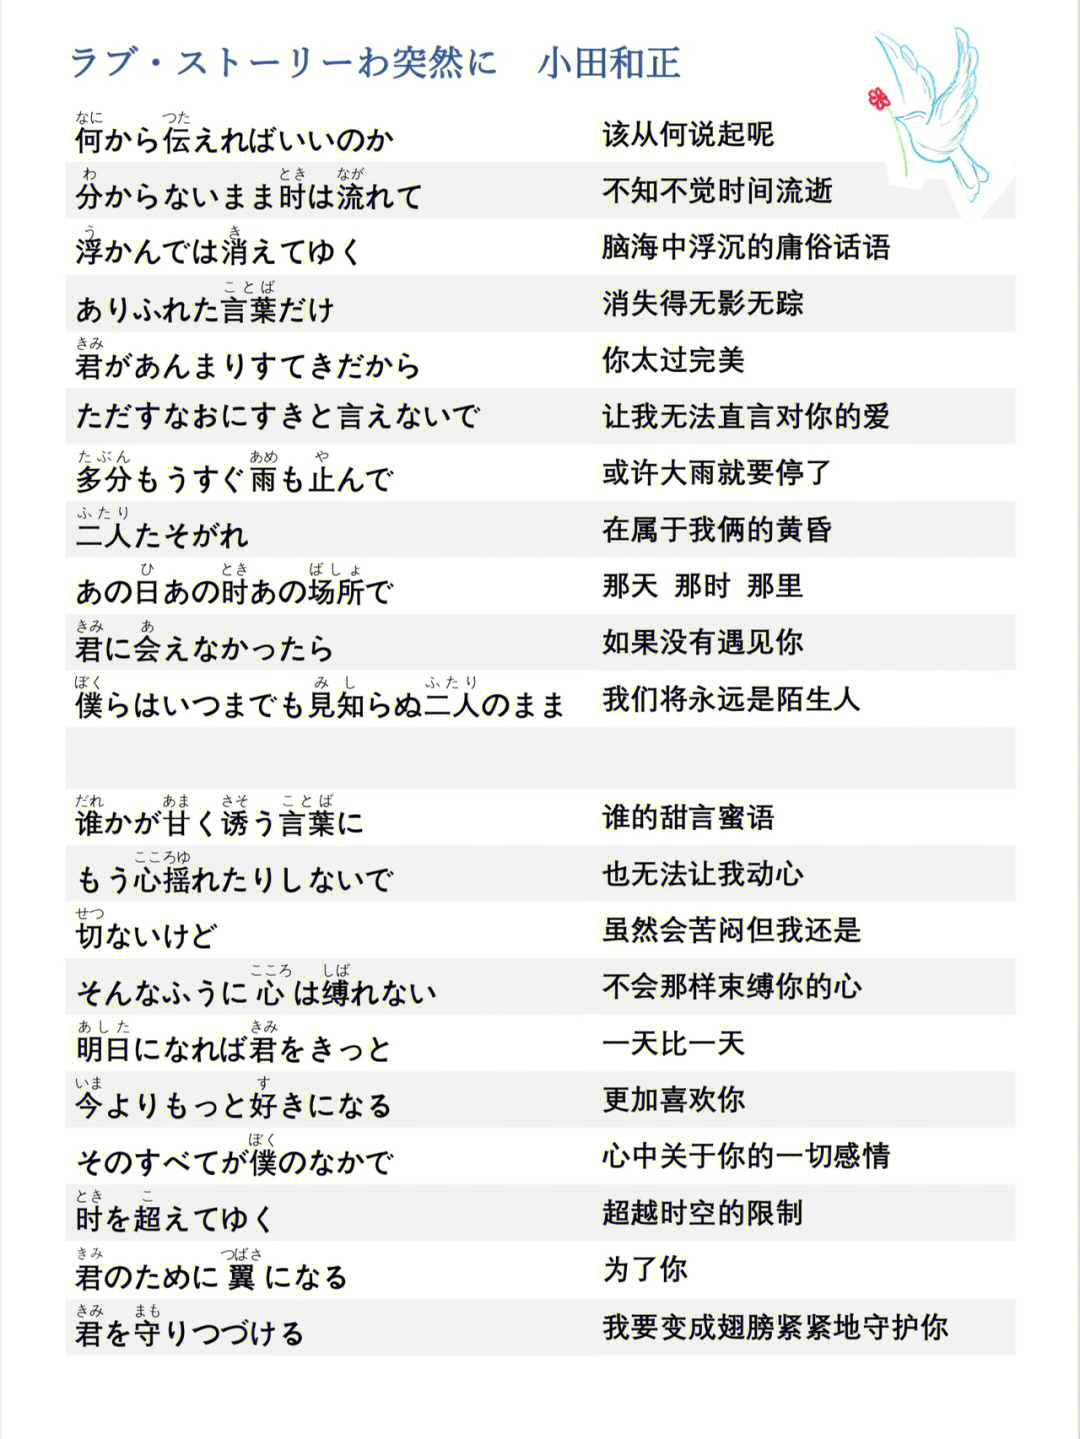 日语学习日语歌曲假名标注